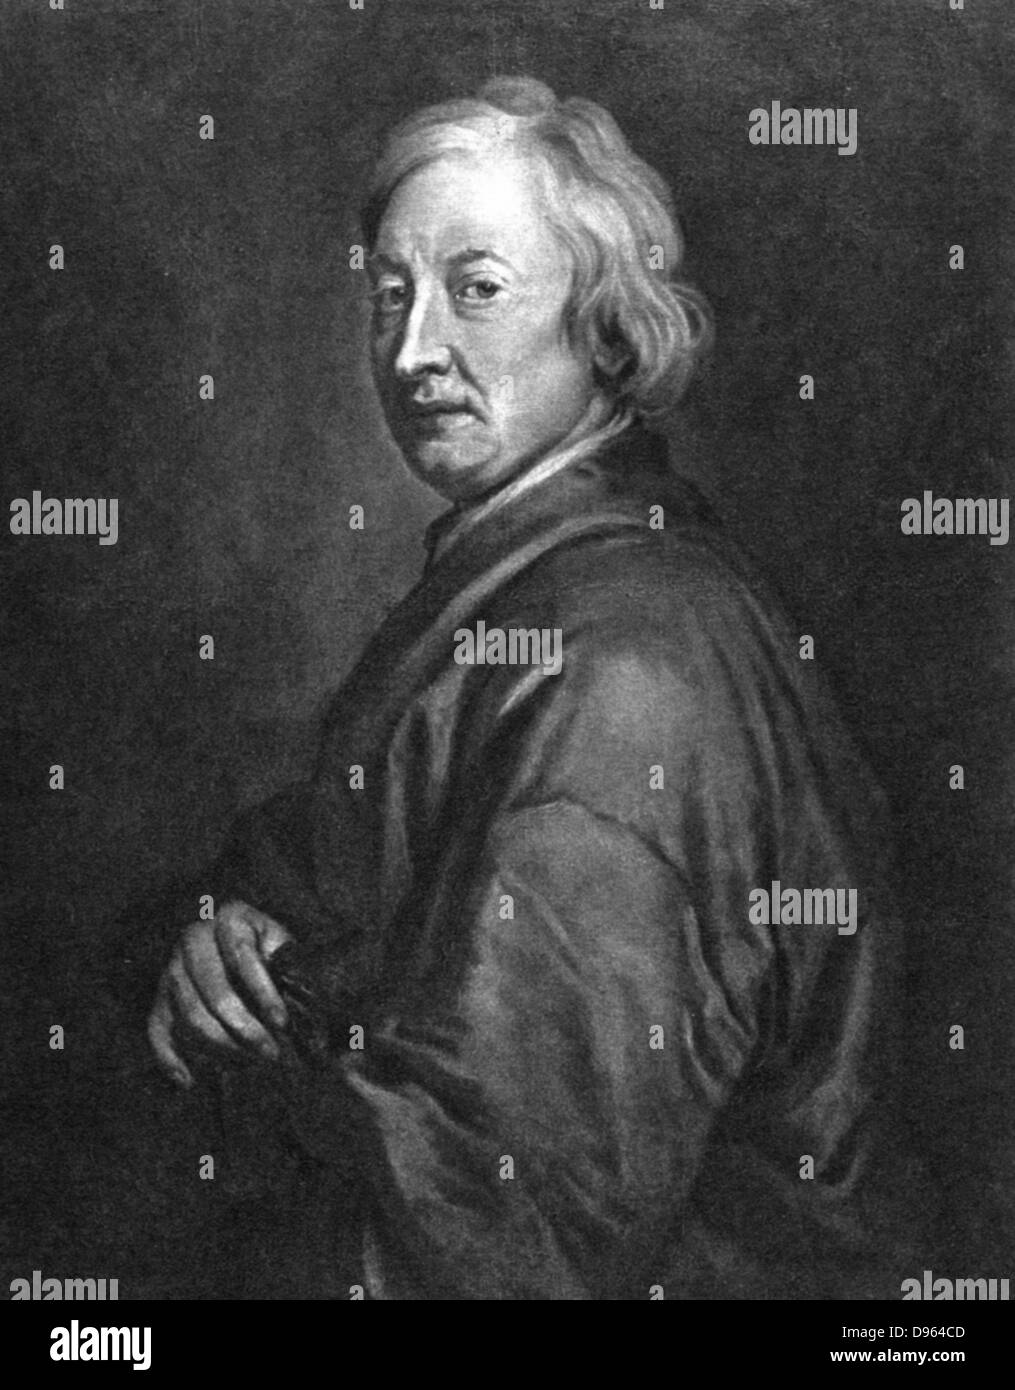 John Dryden (1631-1700) poète anglais. Poète Lauréat 1668. Lithographie après portrait par Godfrey Kneller. Banque D'Images